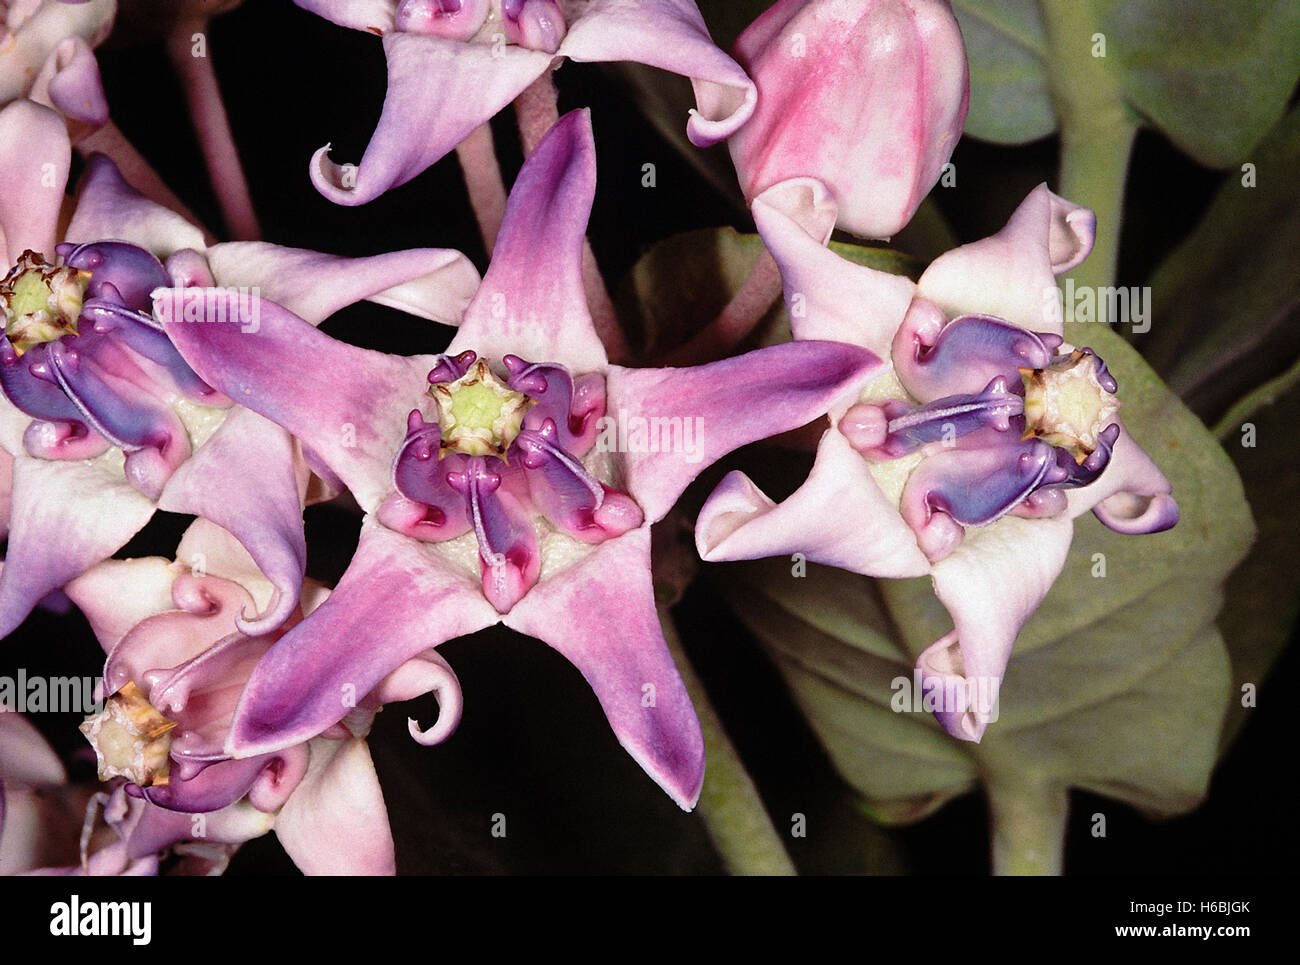 Krone Blume, akund. calotropis gigantea Familie: asclepiadaceae Seidenpflanze Familie. Wächsernen blumen Lavendel. Eine Anlage mit giftigen Milchsaft. Stockfoto